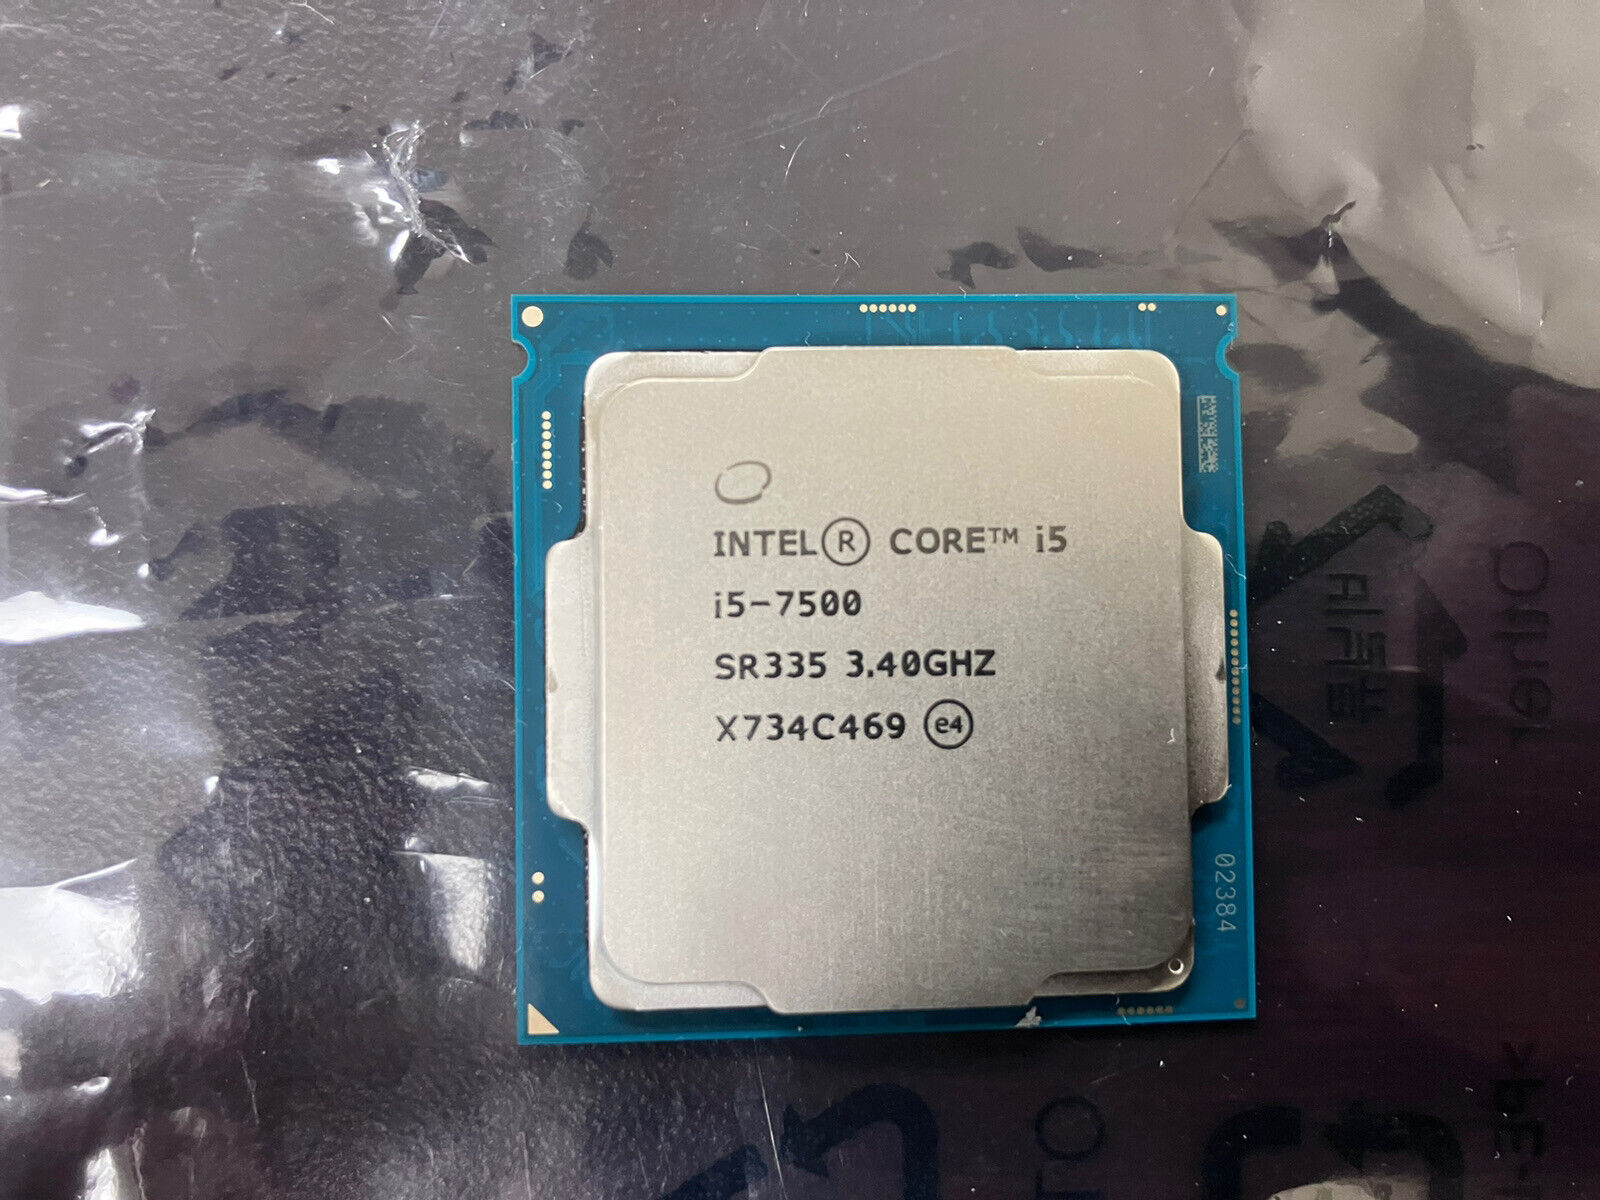 Intel Quad - Core i5 - 7500 3.4ghz SR335 Processor